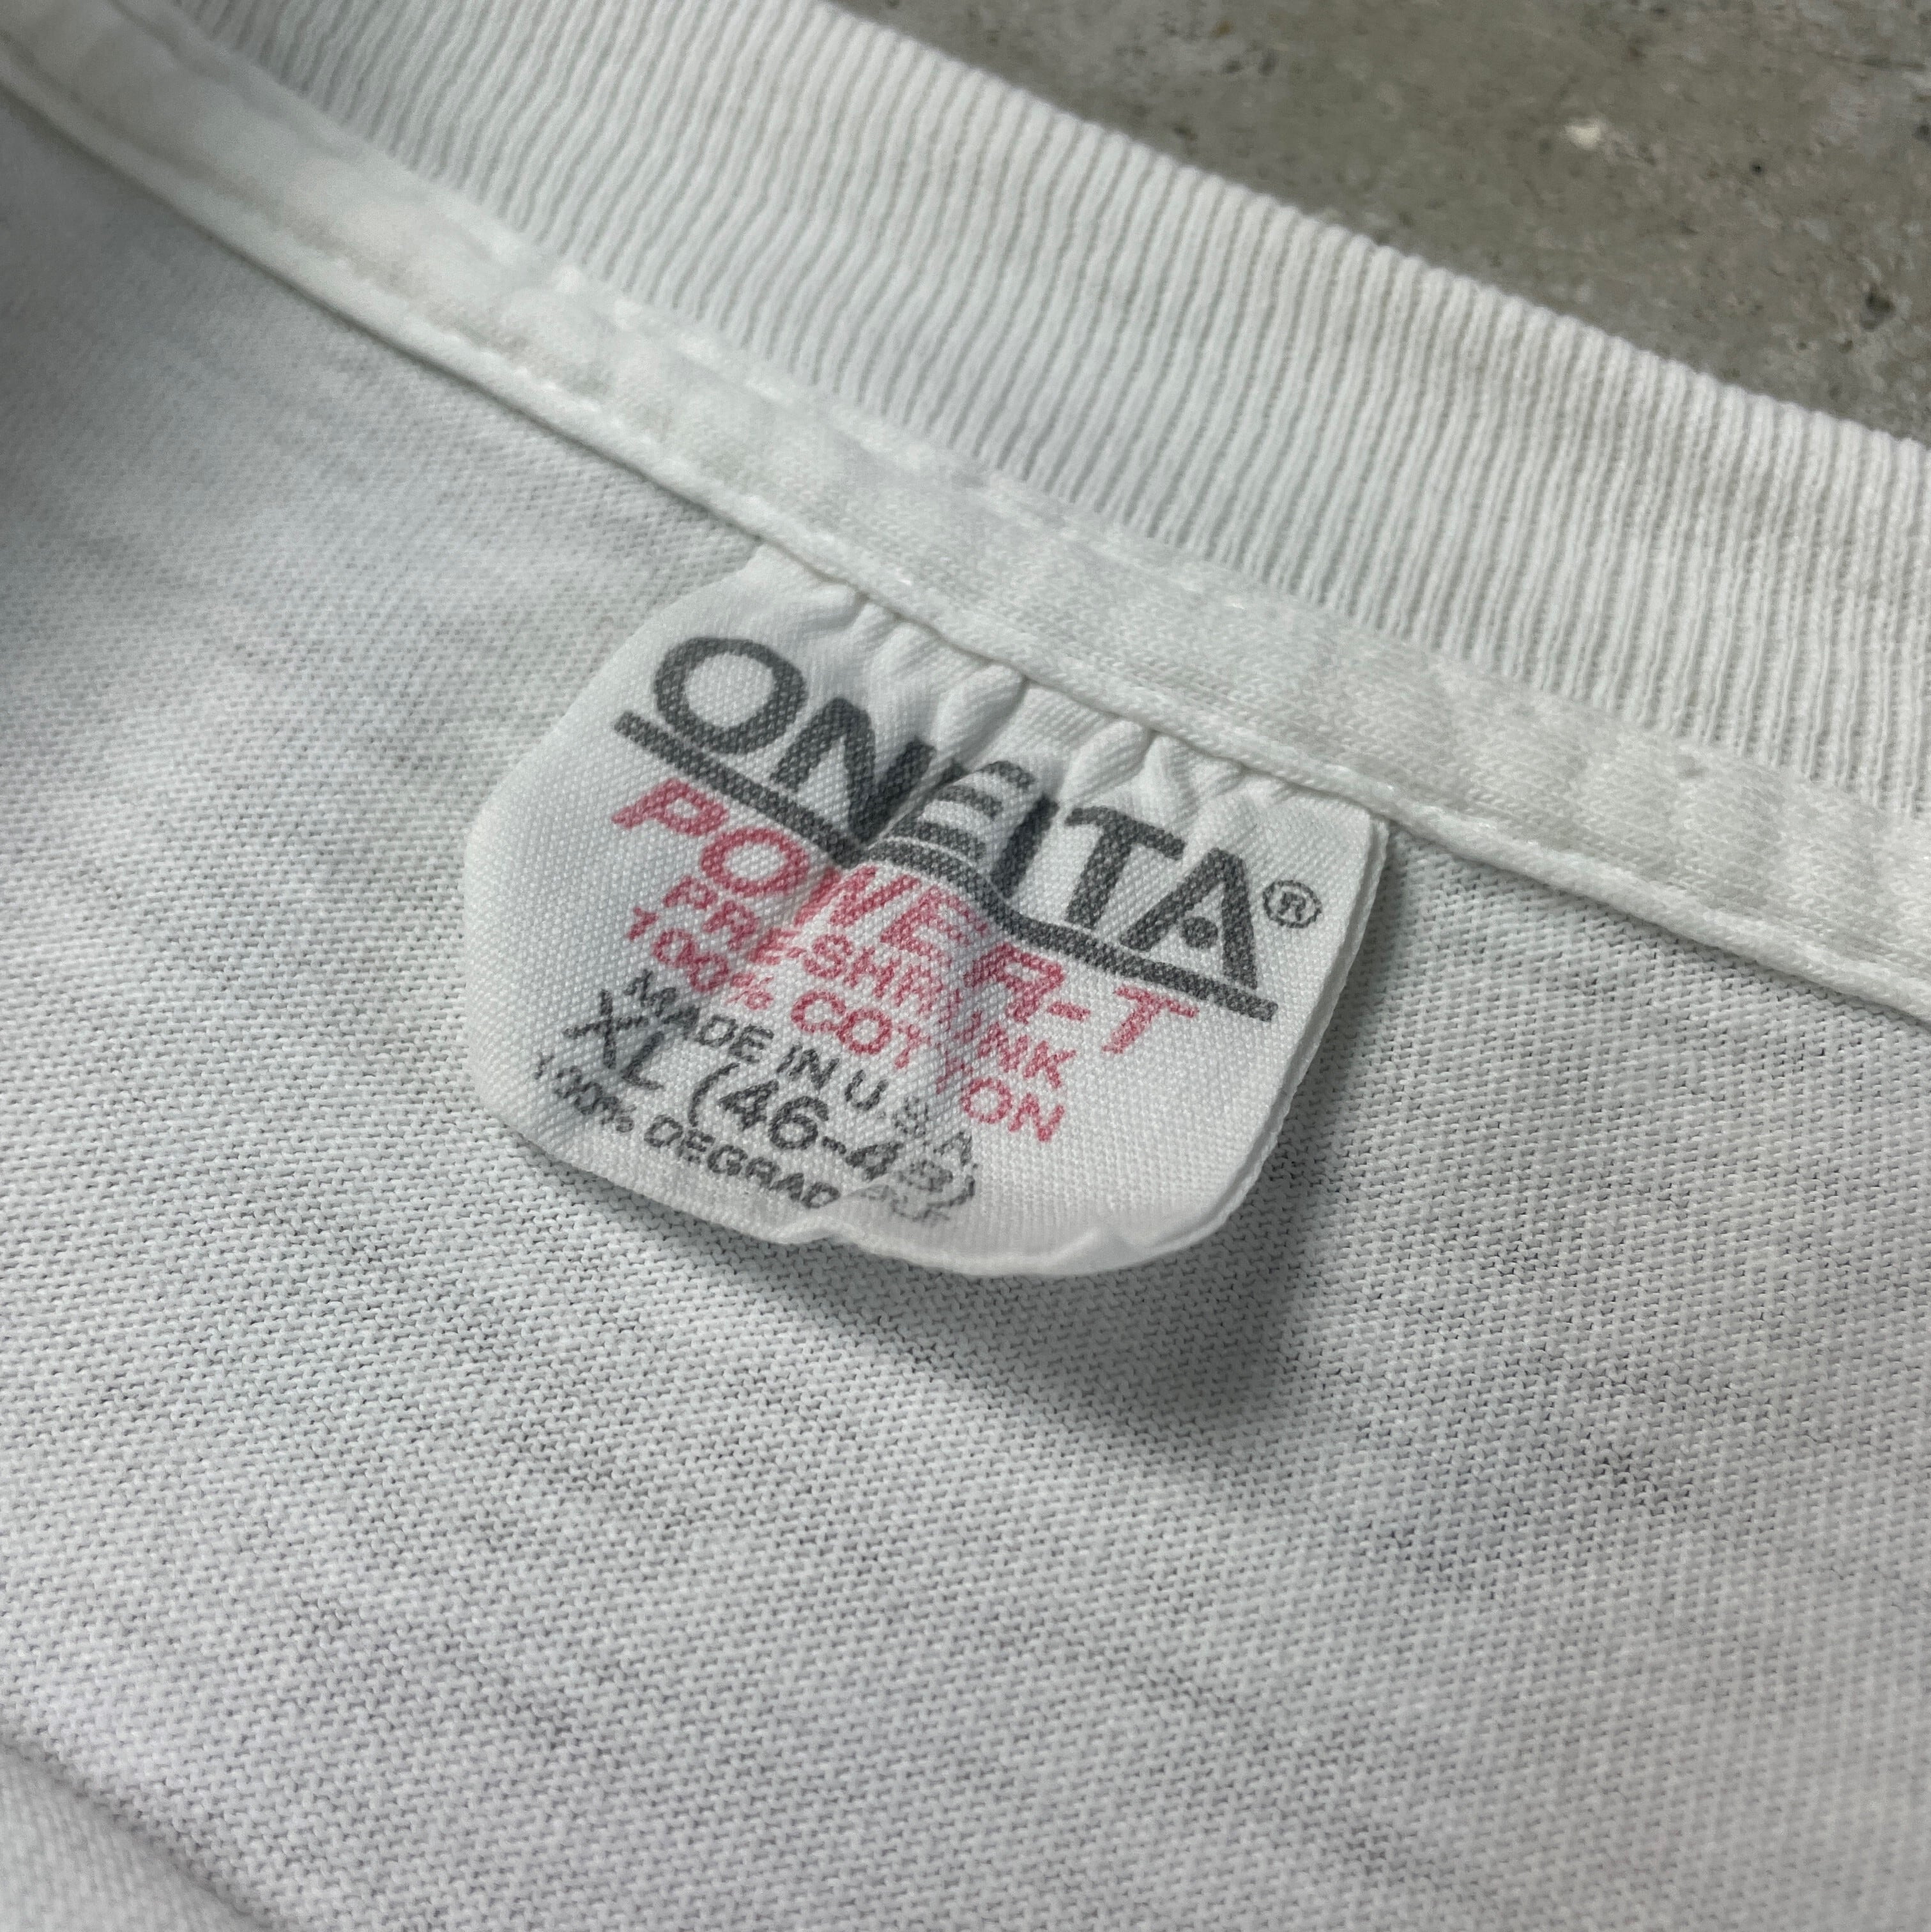 90ｓ 半袖 Tシャツ XL オフ白系 ONEITA ビッグサイズ メンズ 【200423】